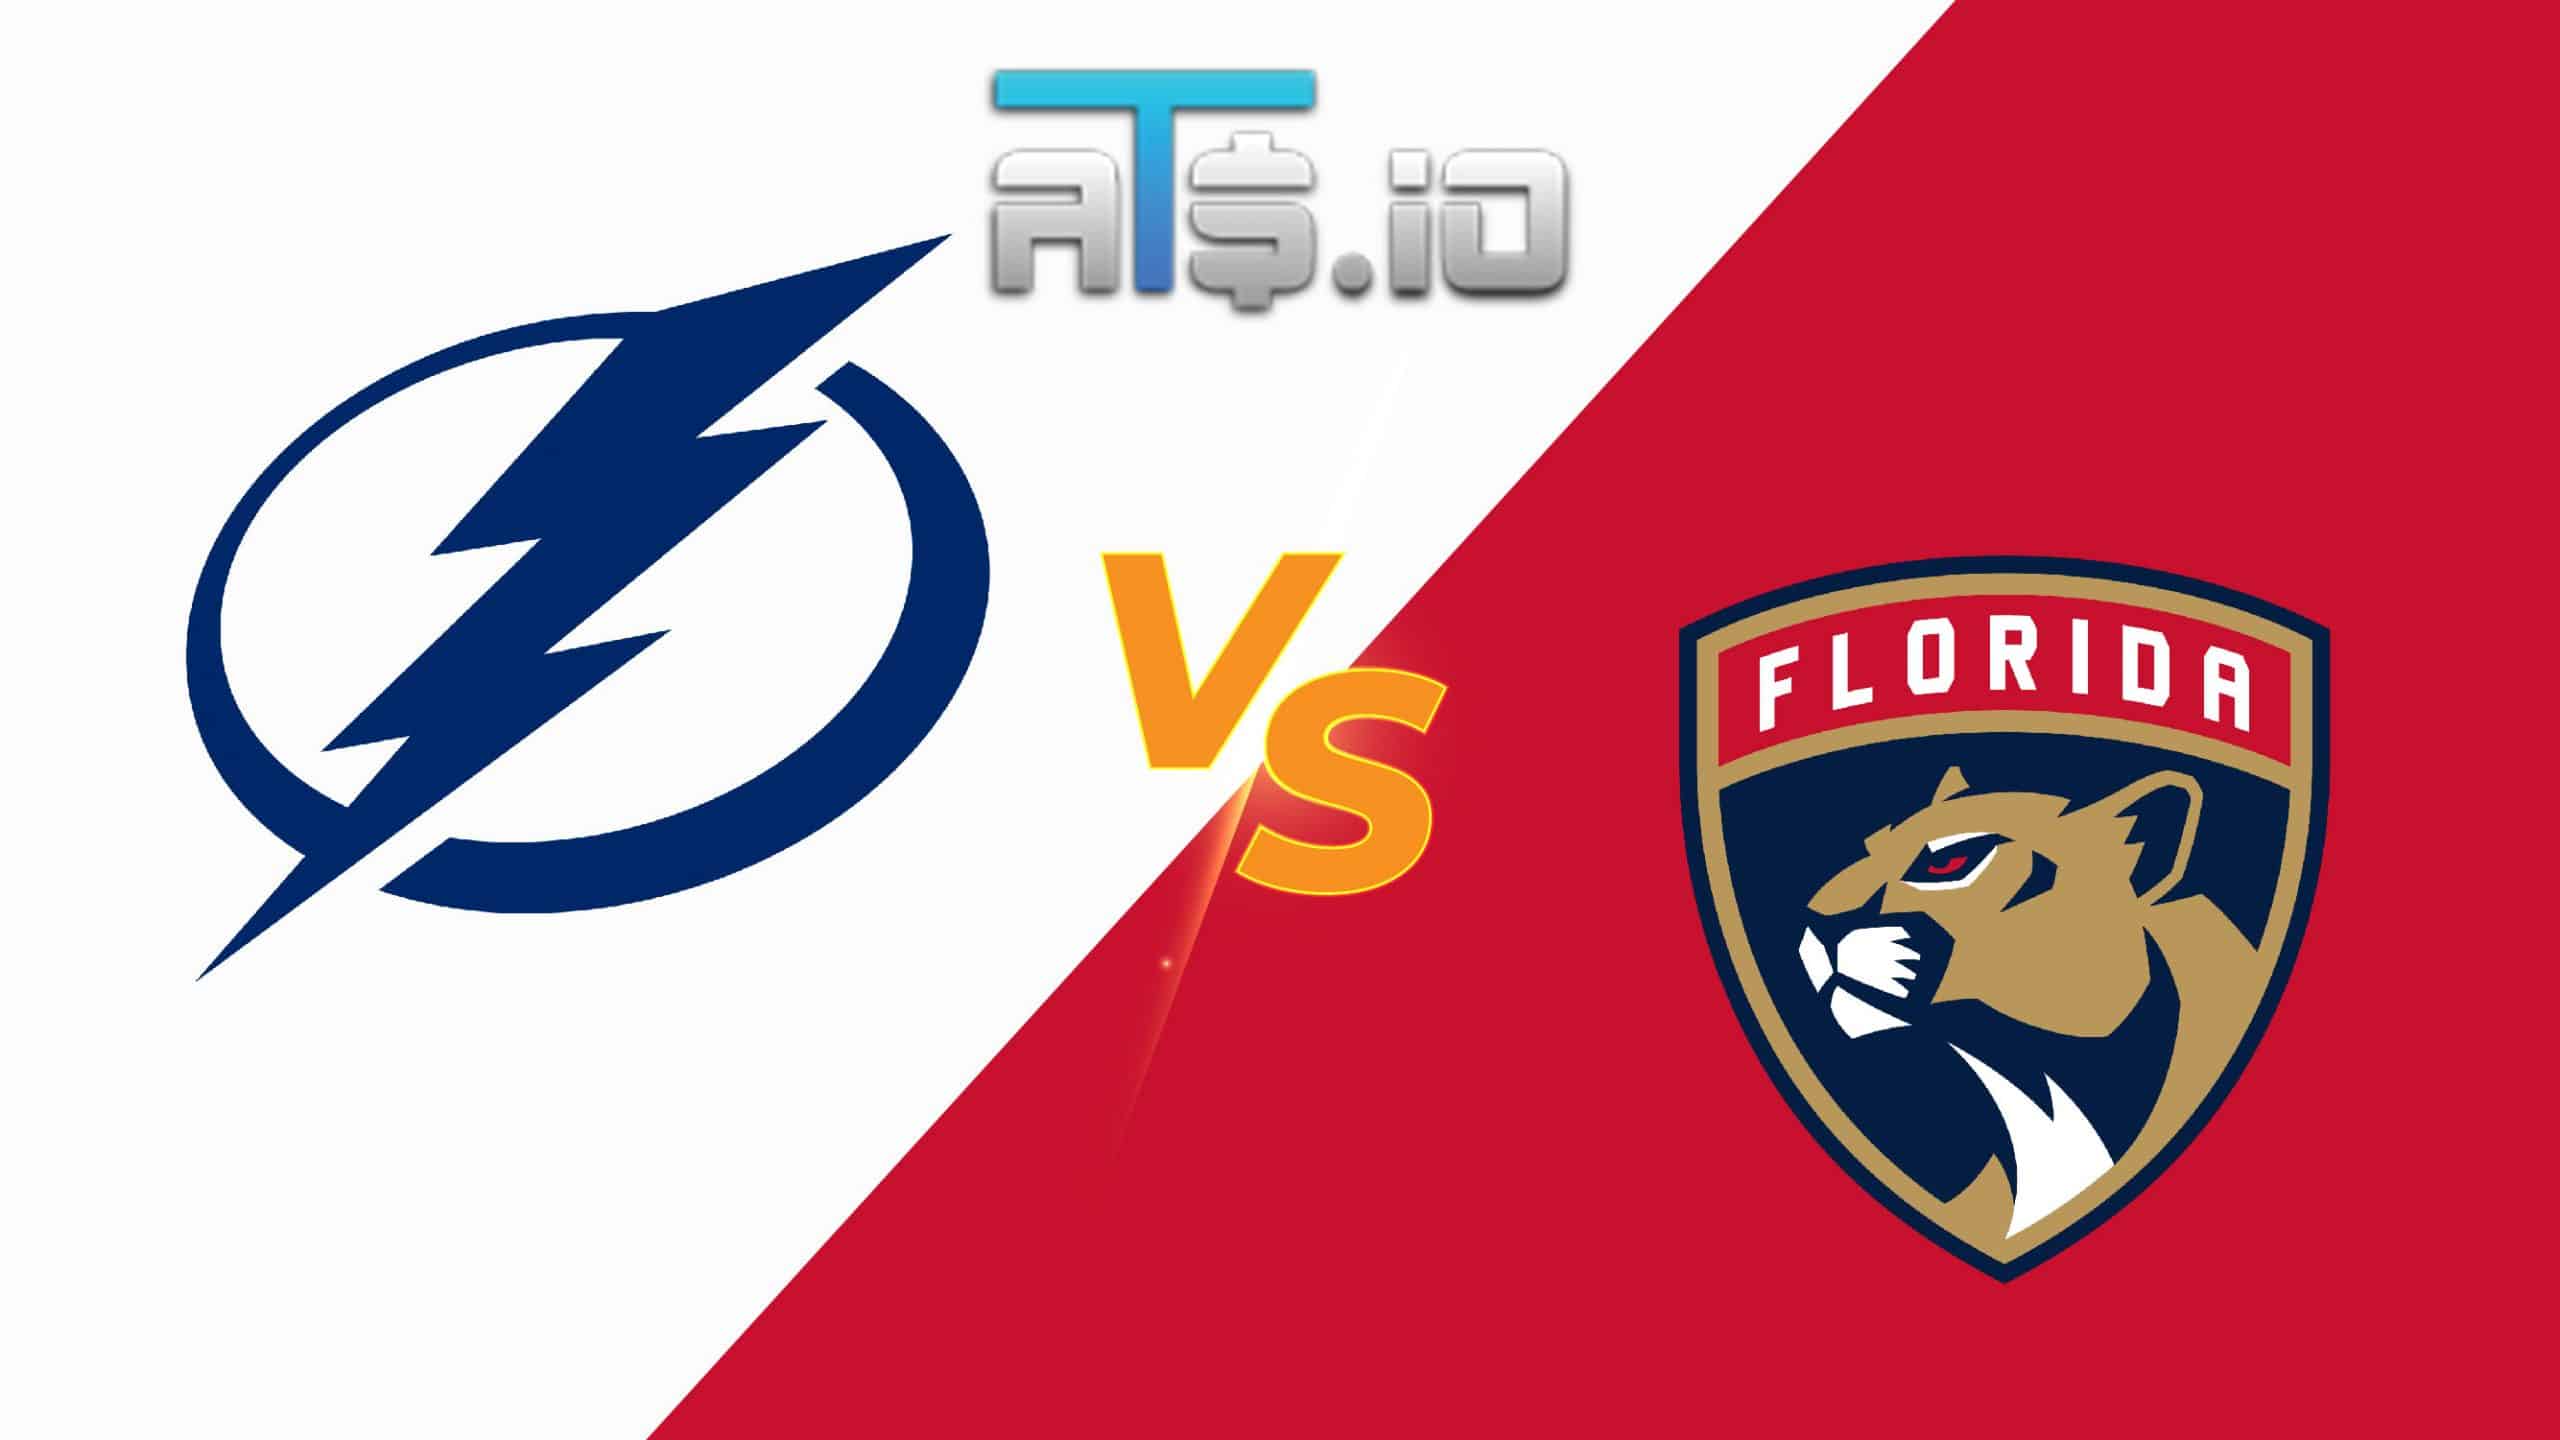 Tampa Bay Lightning vs Florida Panthers Game 2 Prediction 05/19/22